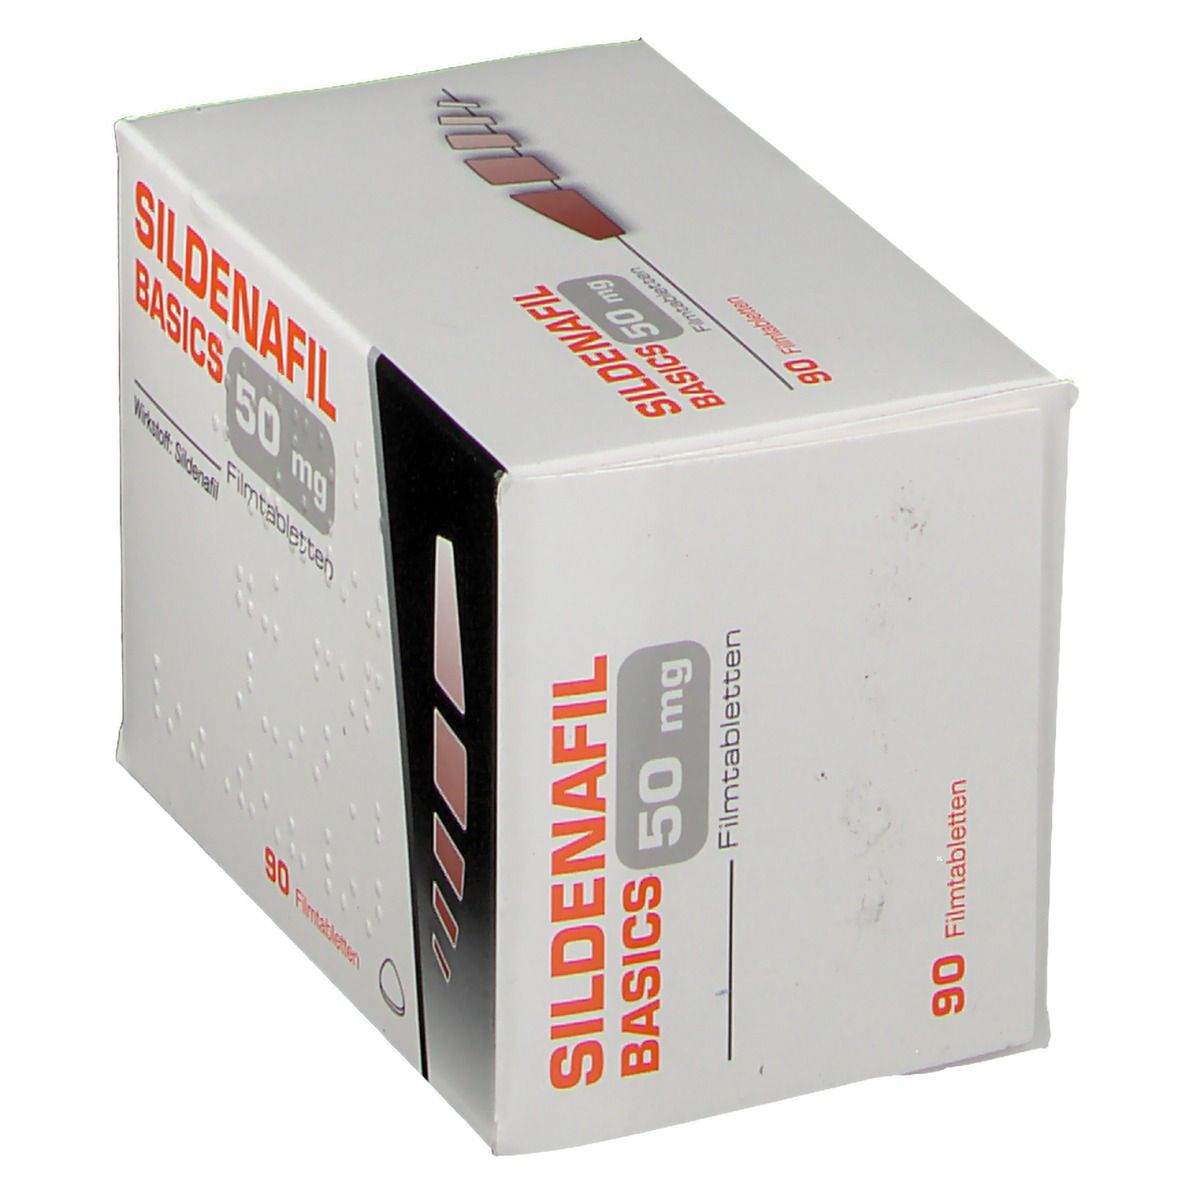 SILDENAFIL BASICS 50 mg